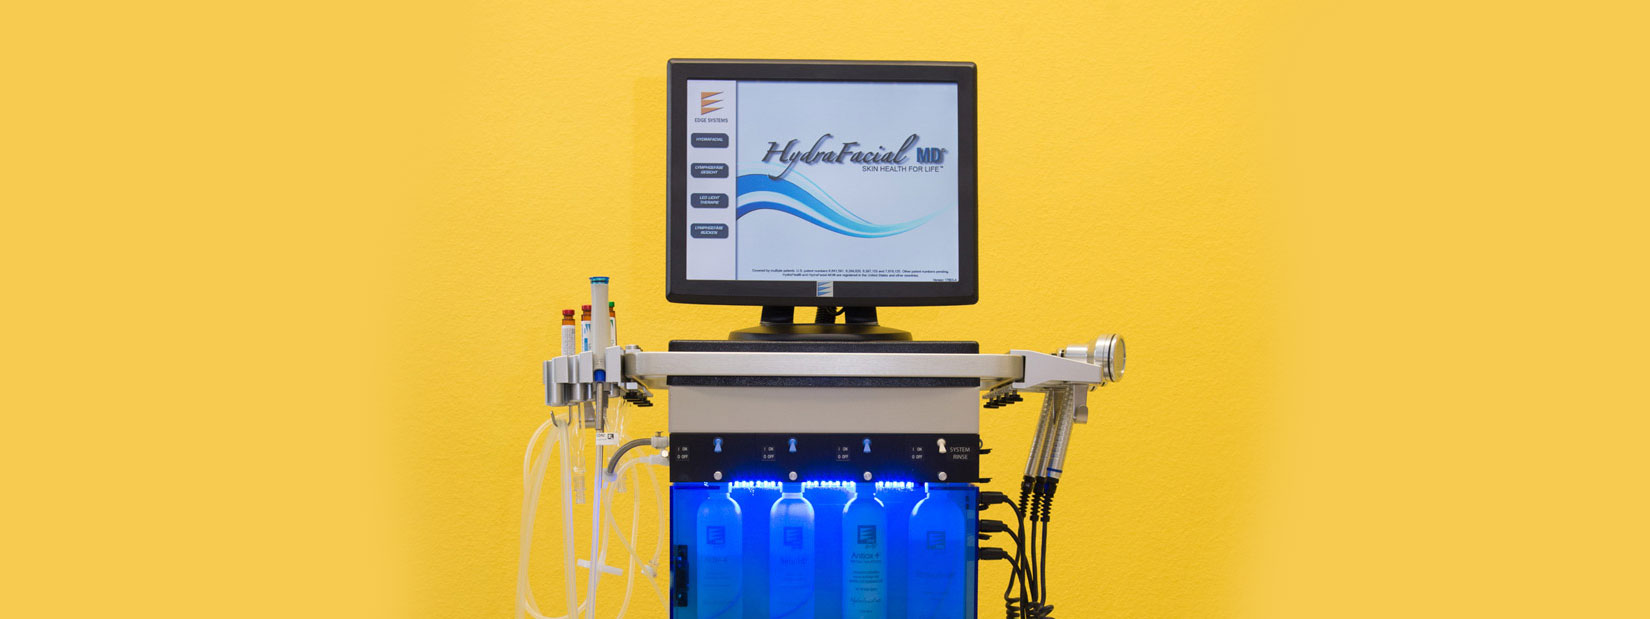 Dieses Bild zeigt die Behandlungsinstrumente HydraFacial MD.